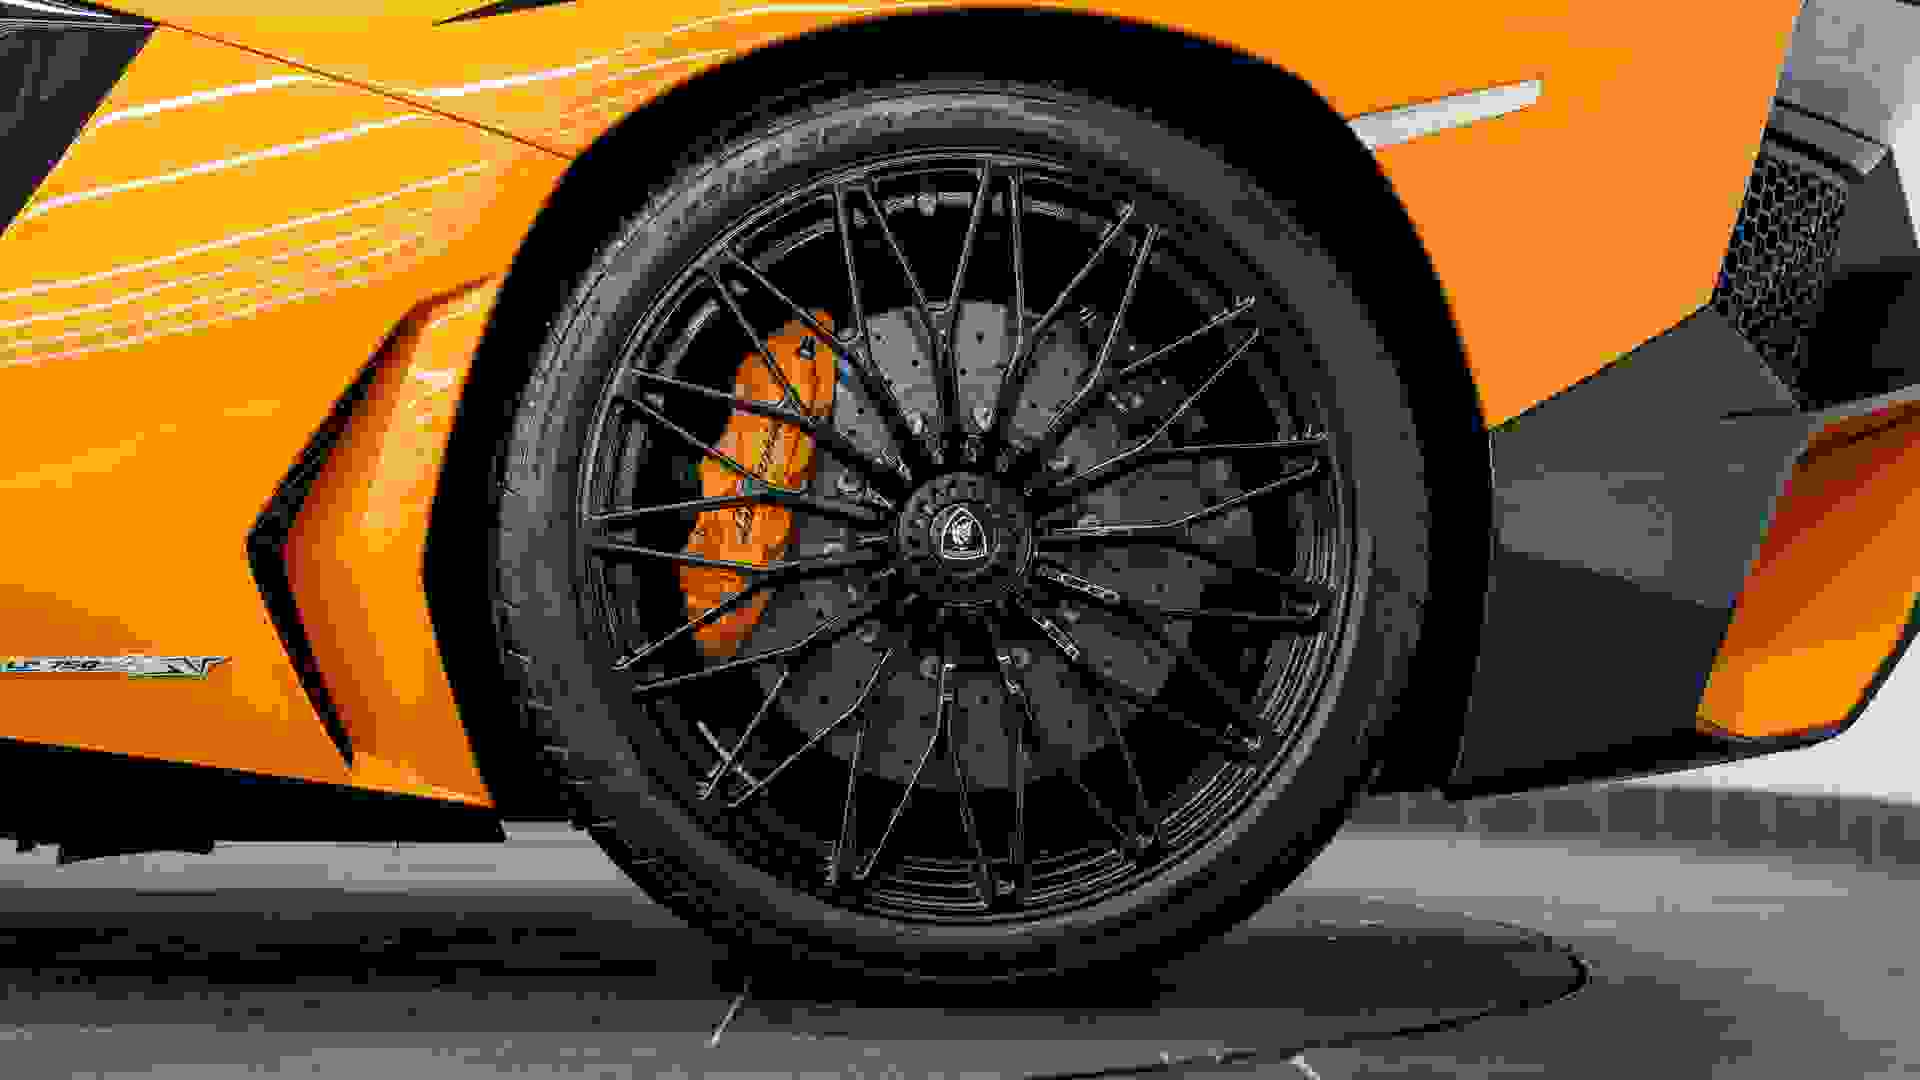 Lamborghini AVENTADOR SV Photo 525f78bd-2a3f-4246-8d0c-f10ebd0d3144.jpg